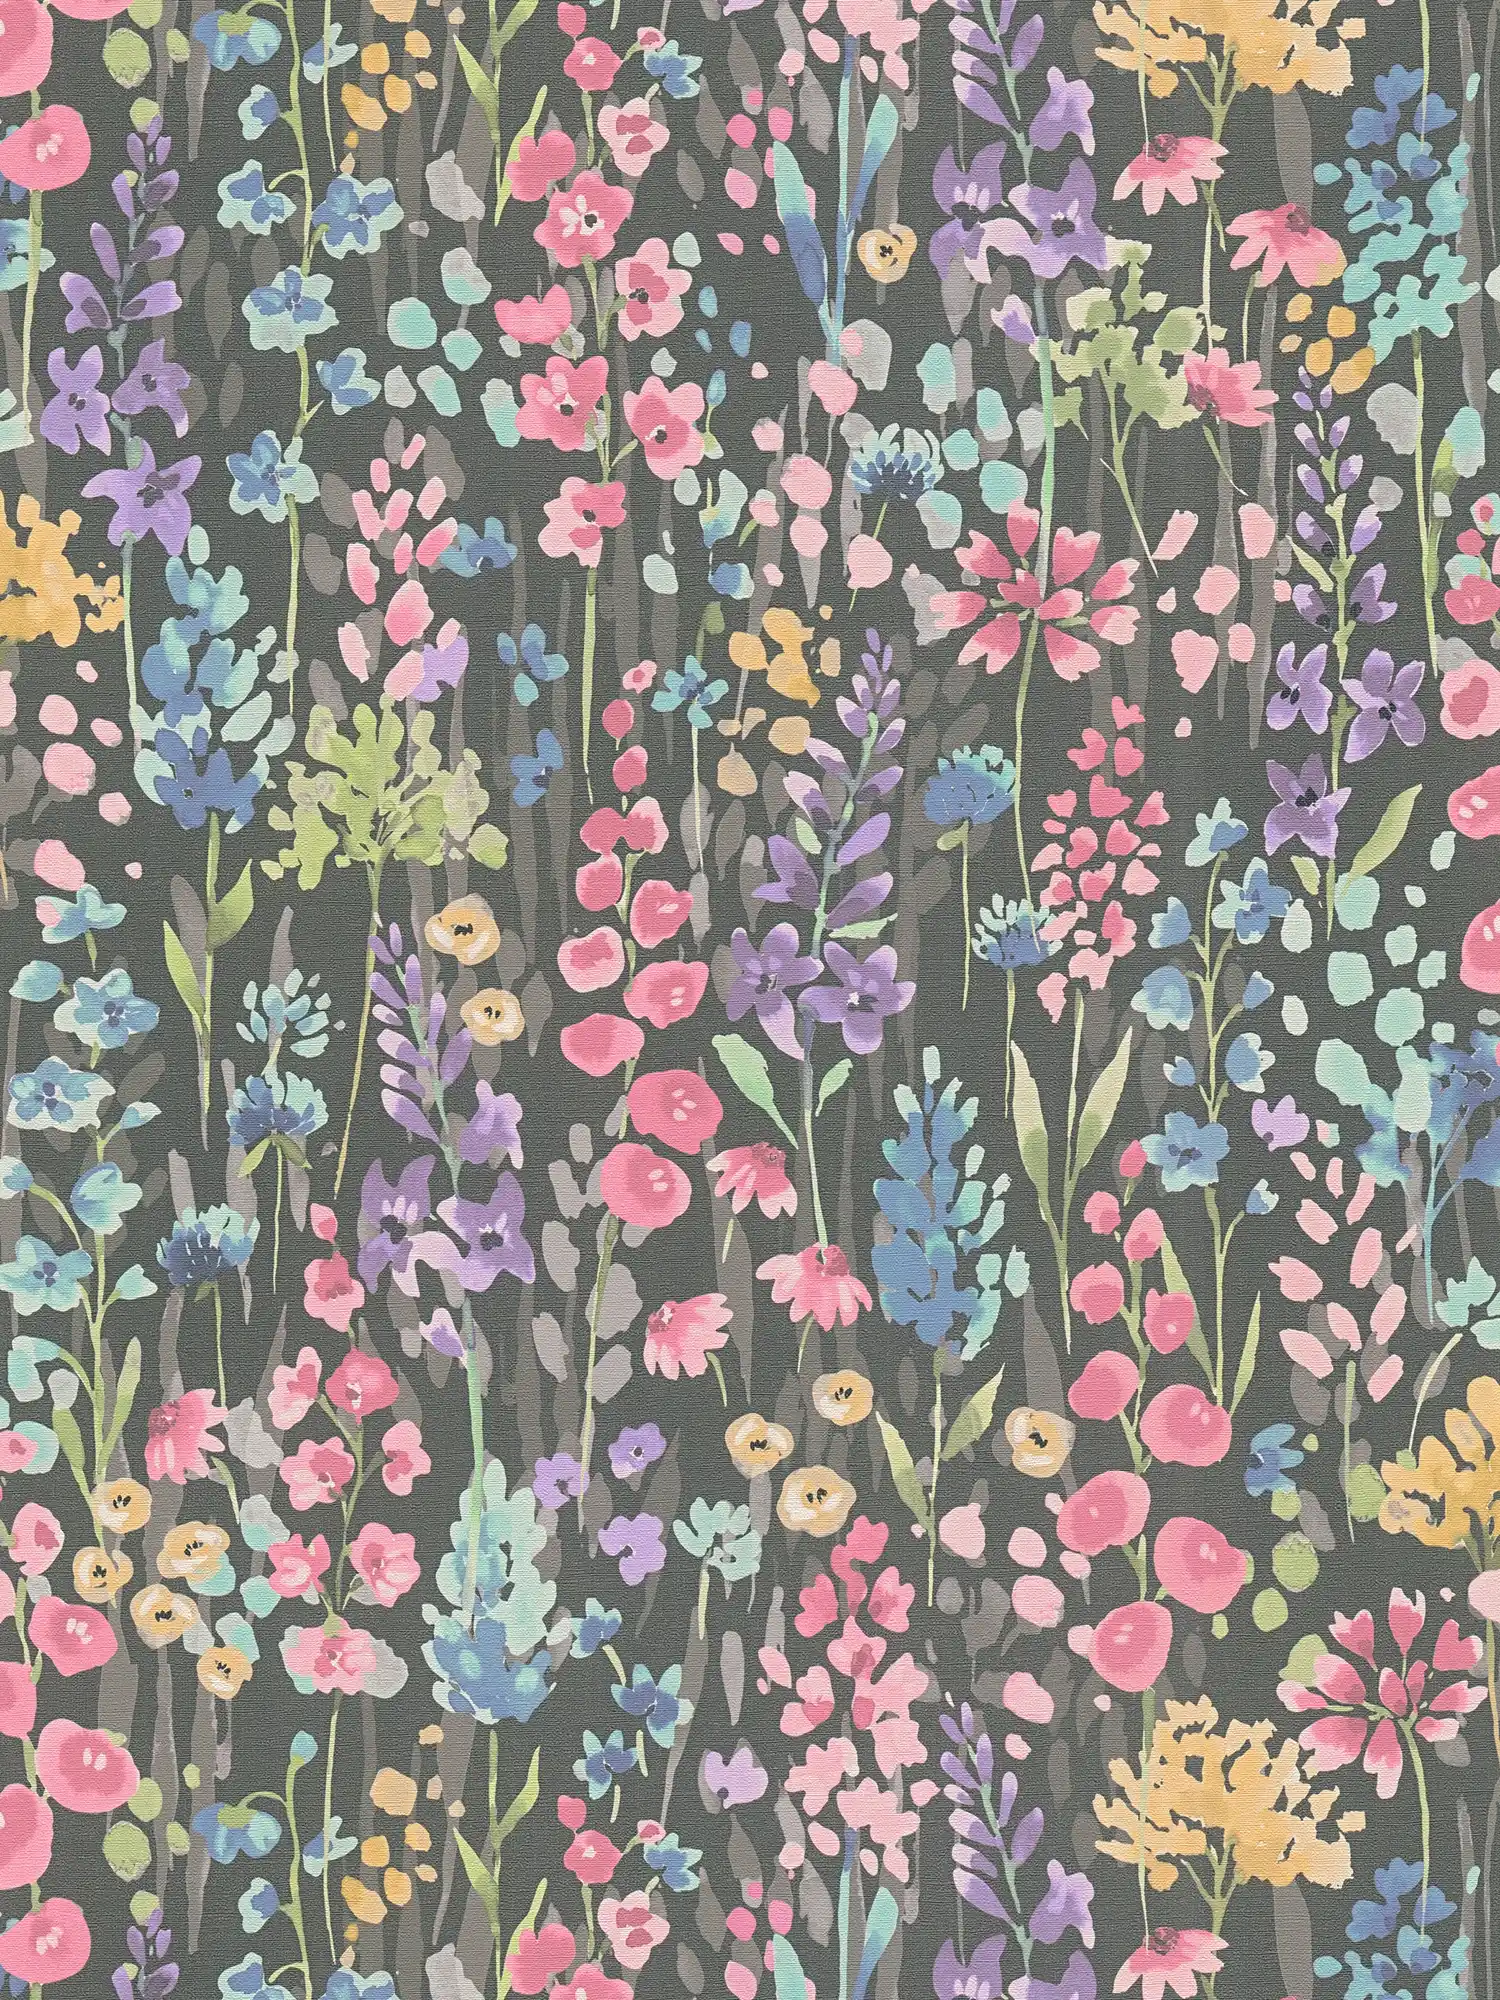         Vliestapete bunte Blumenwiese im Aquarelllook – Bunt, Schwarz, Pink
    